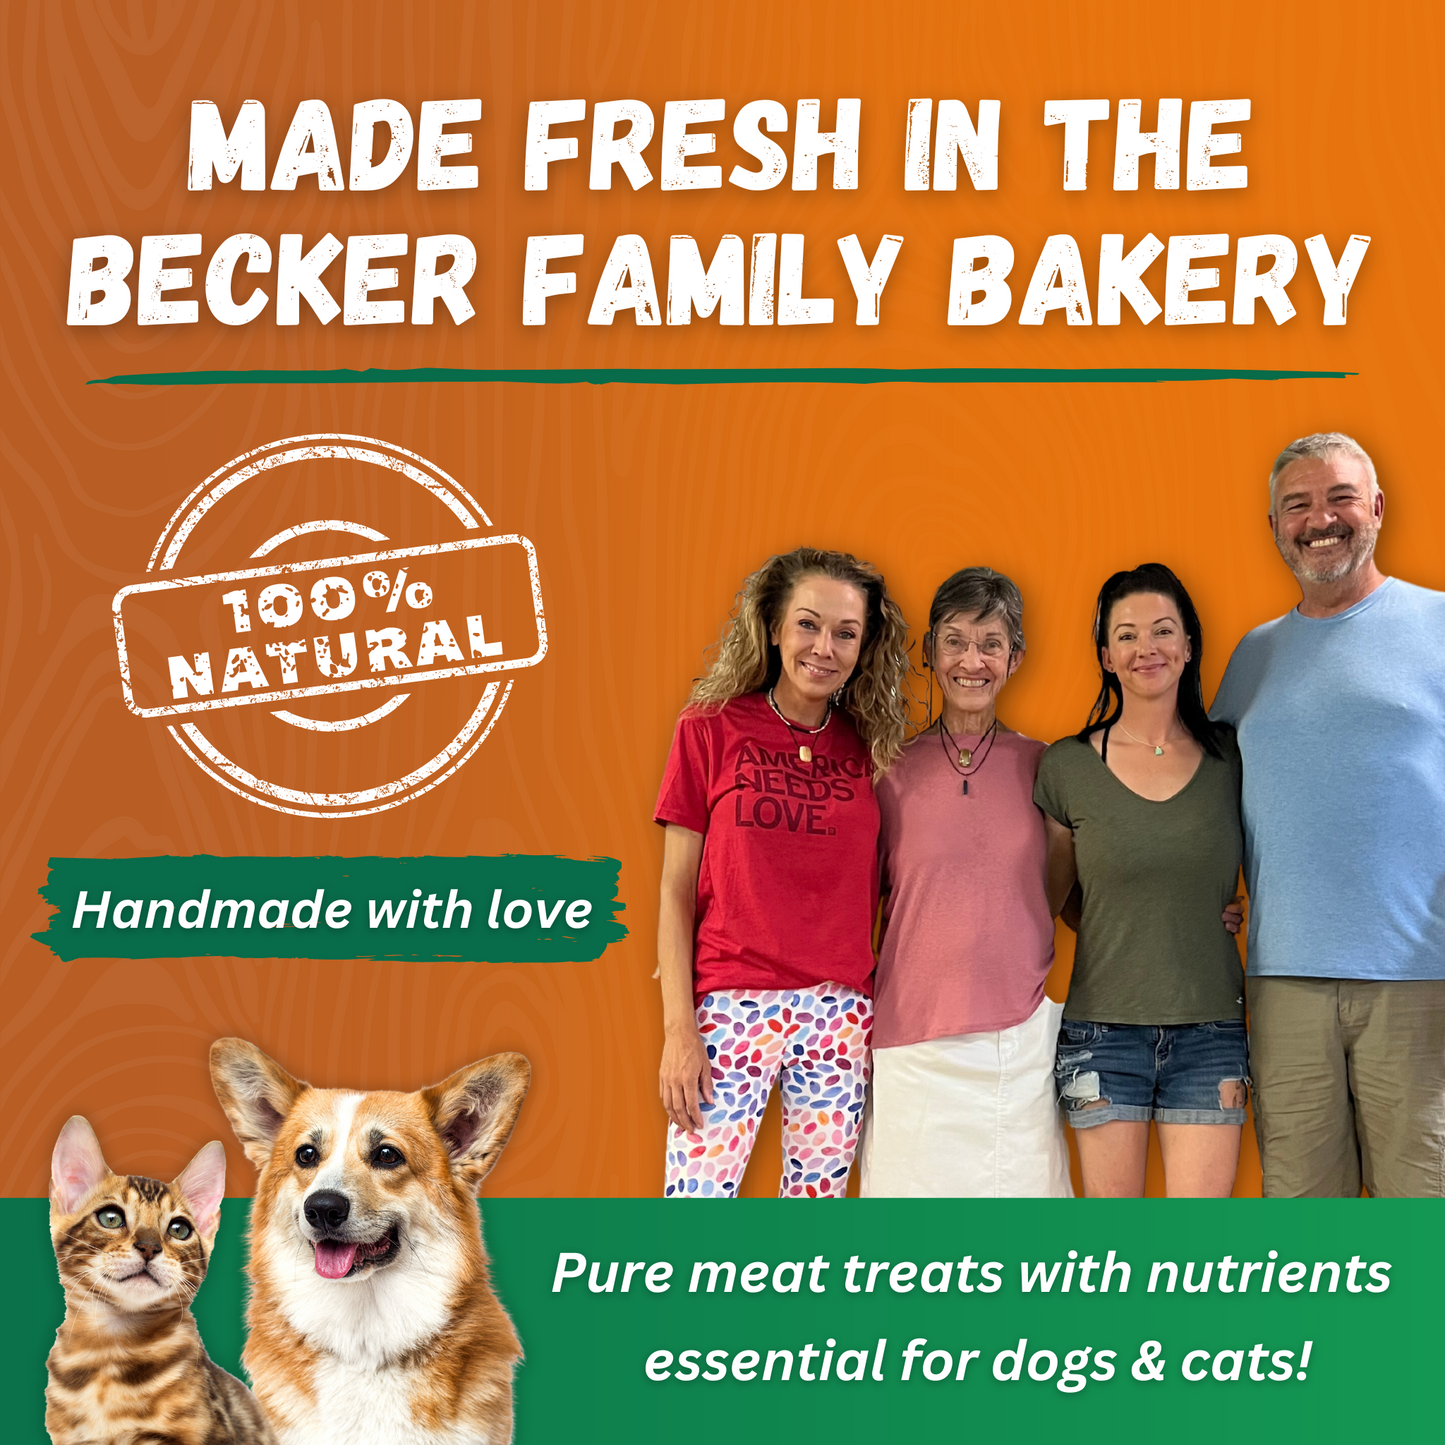 Dr. Becker's Original Beef Bites- 3 Pack- Buy Bulk & Save